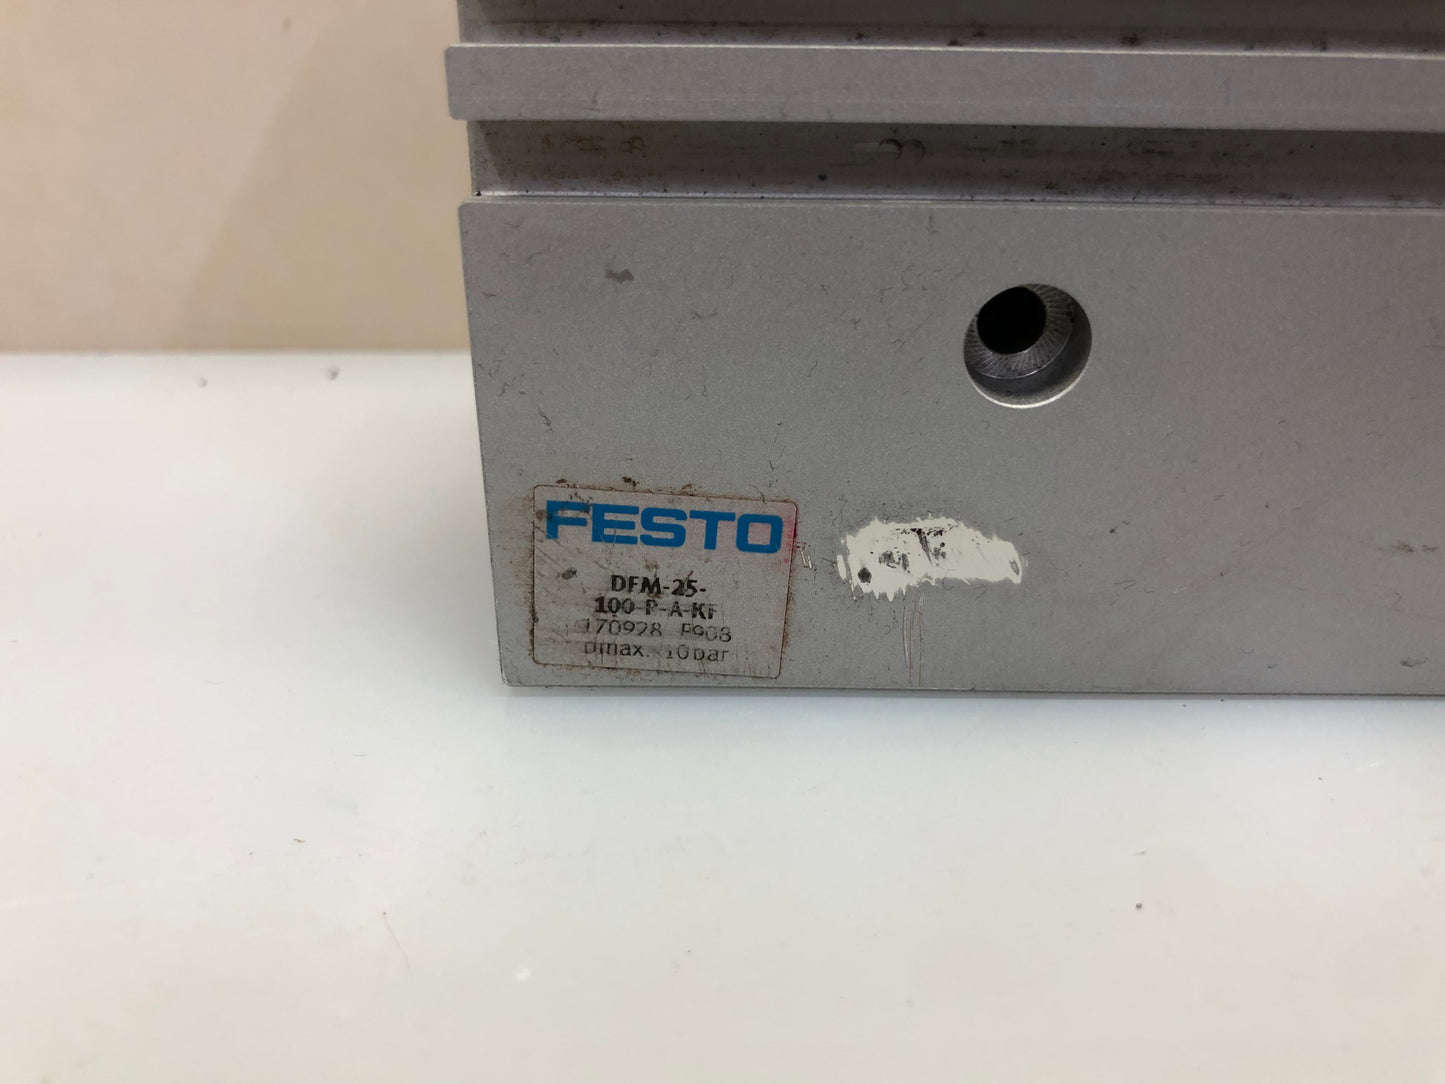 FESTO DFM-25-100-P-A-KF 170928 Guided Actuator